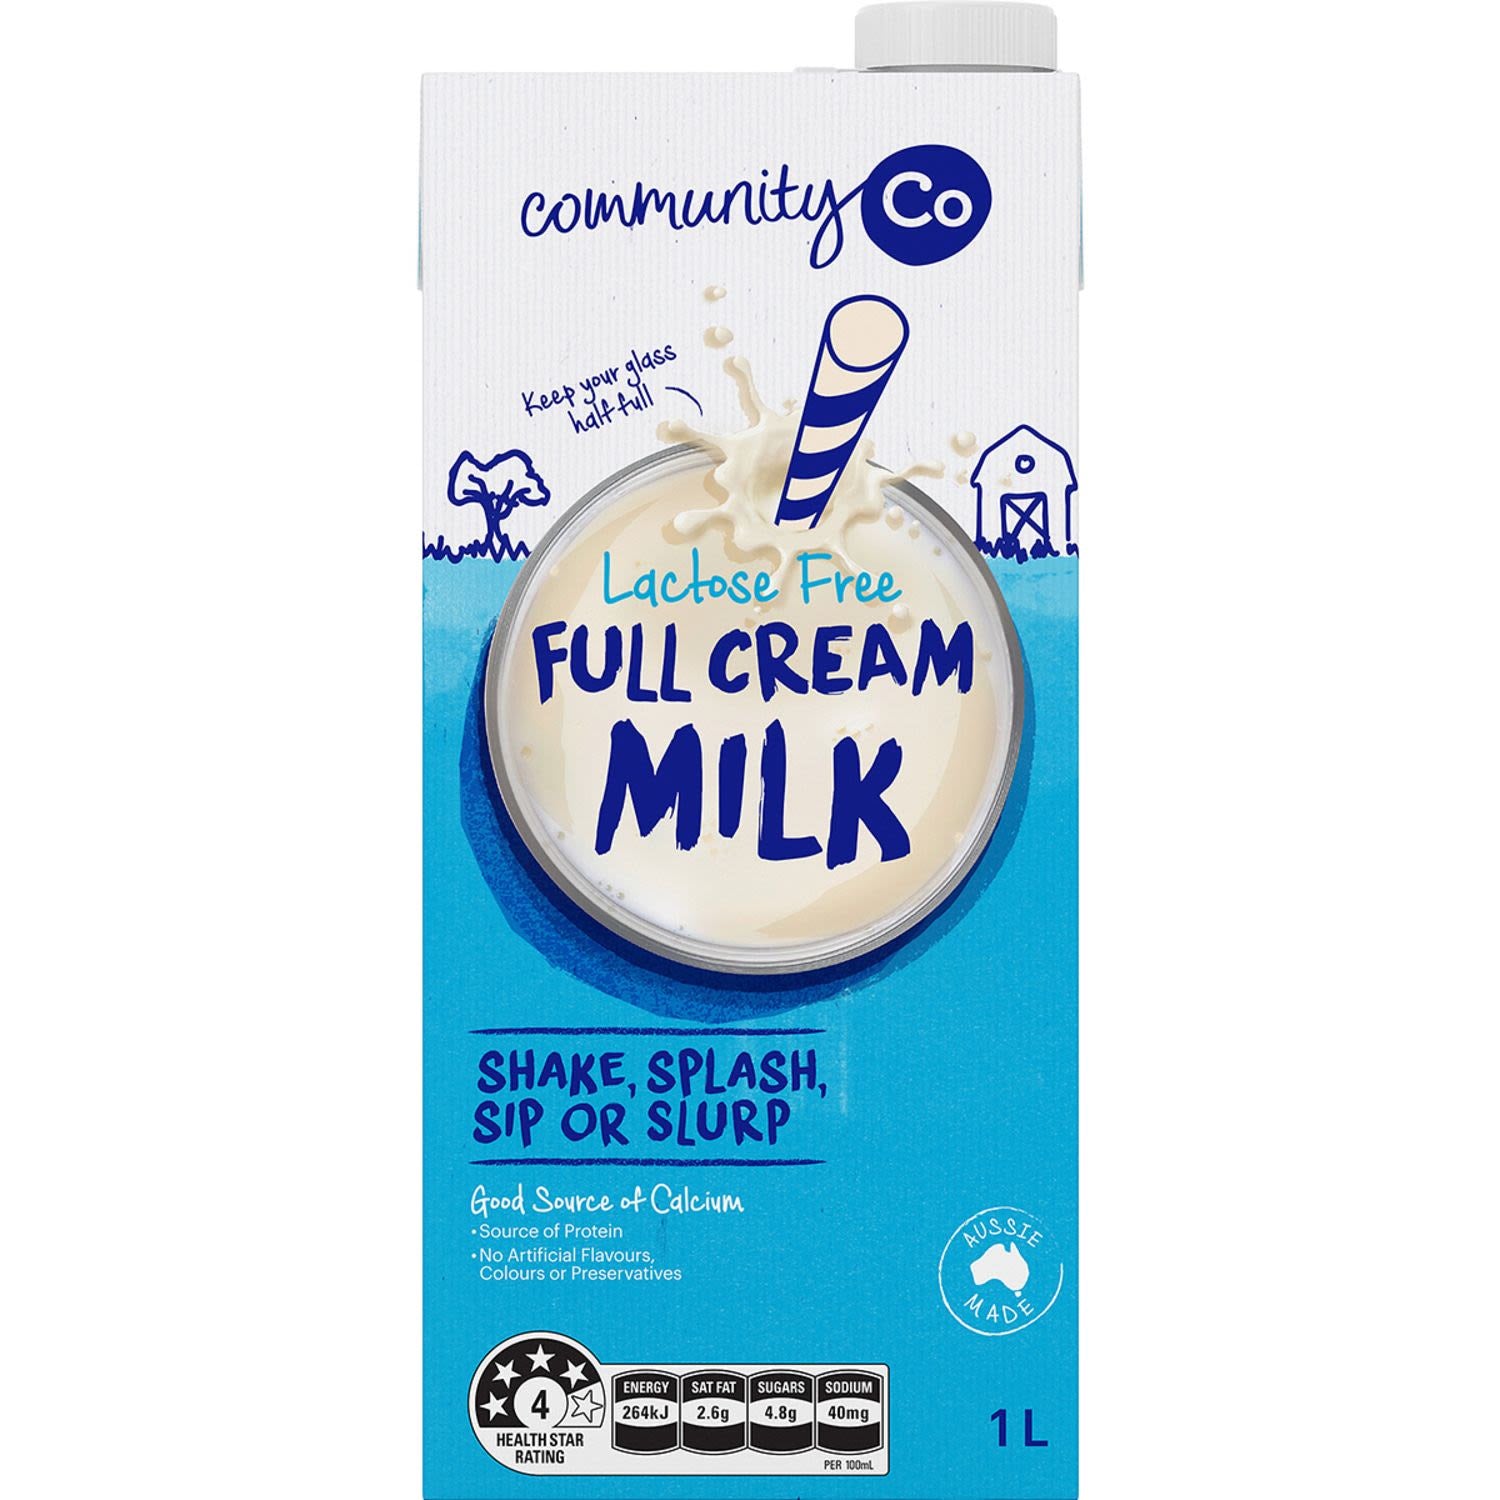 Community Co Lactose Free Full Cream Milk 1L